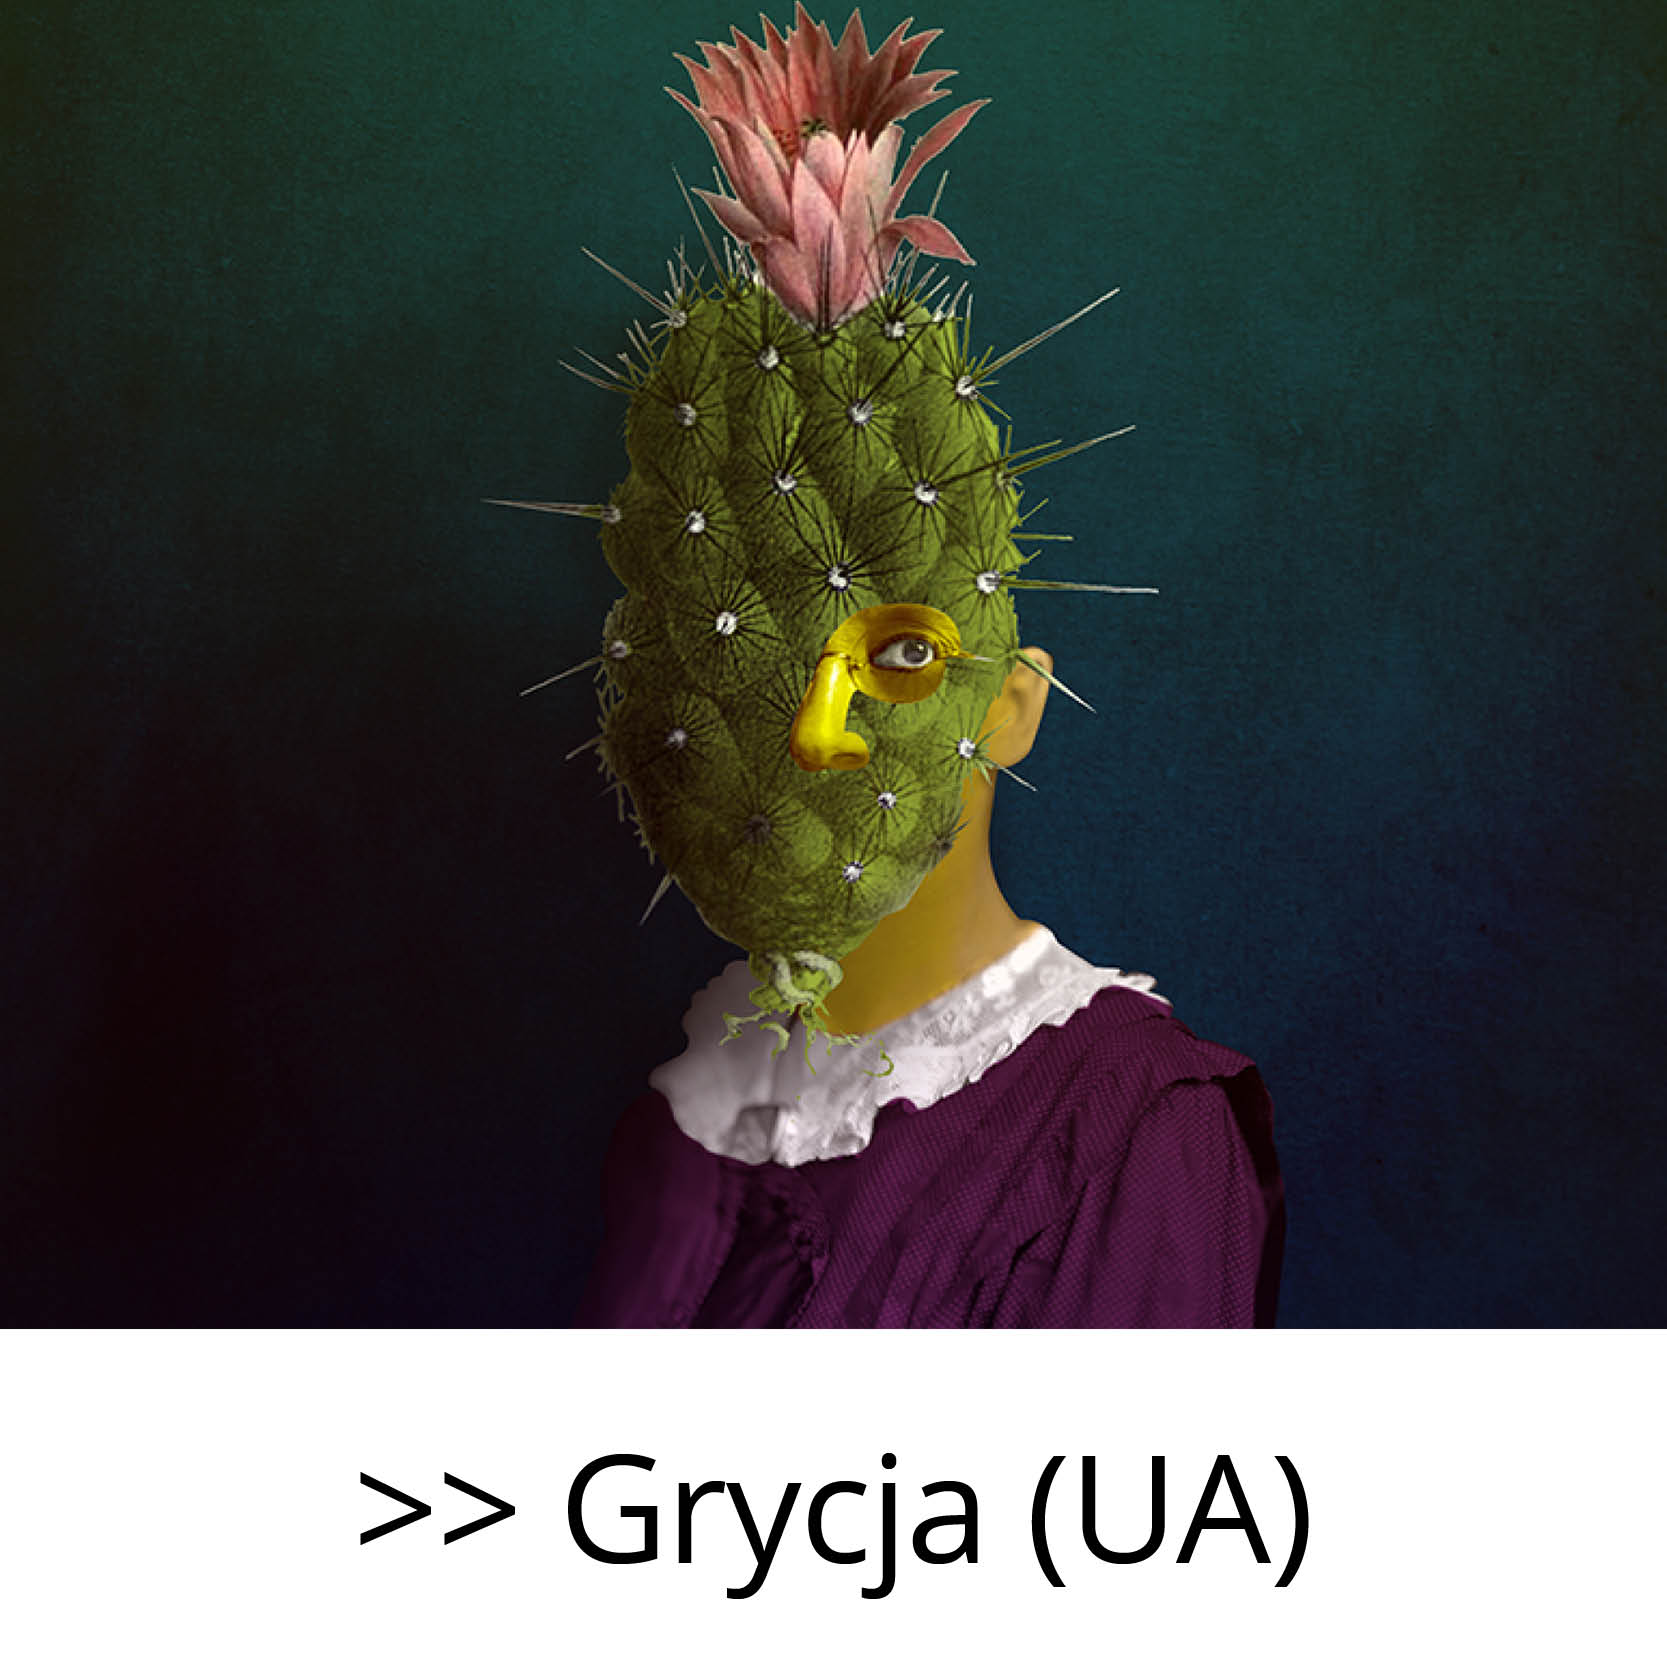 Grycja_(UA)